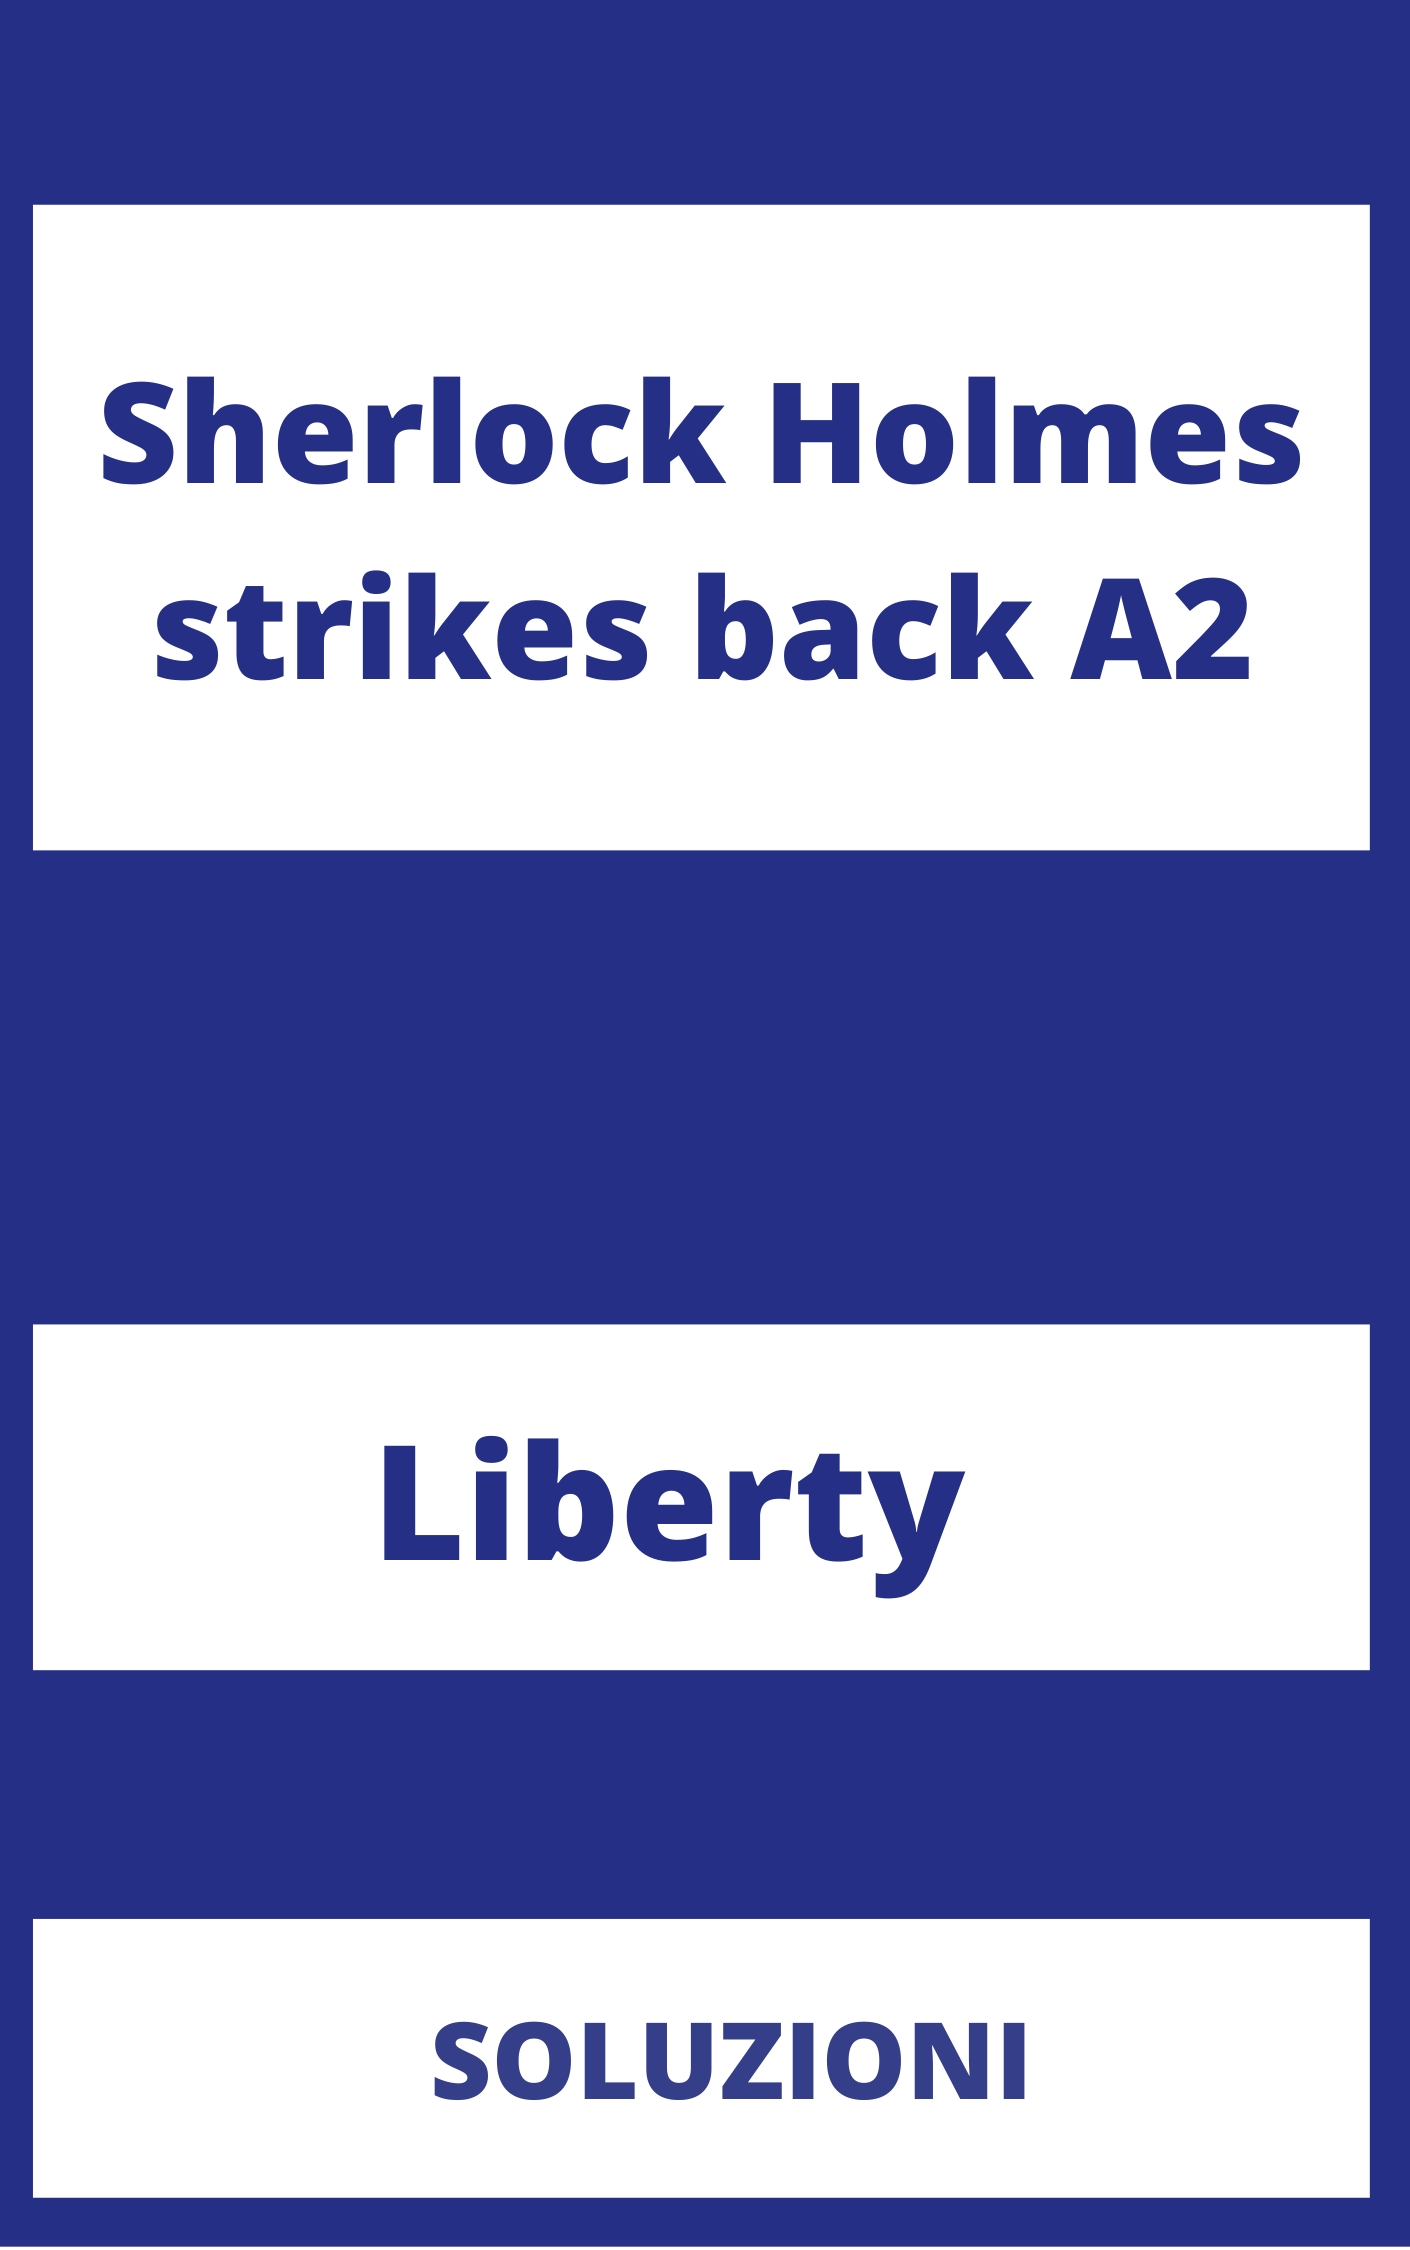 Sherlock Holmes strikes back A2 Soluzioni